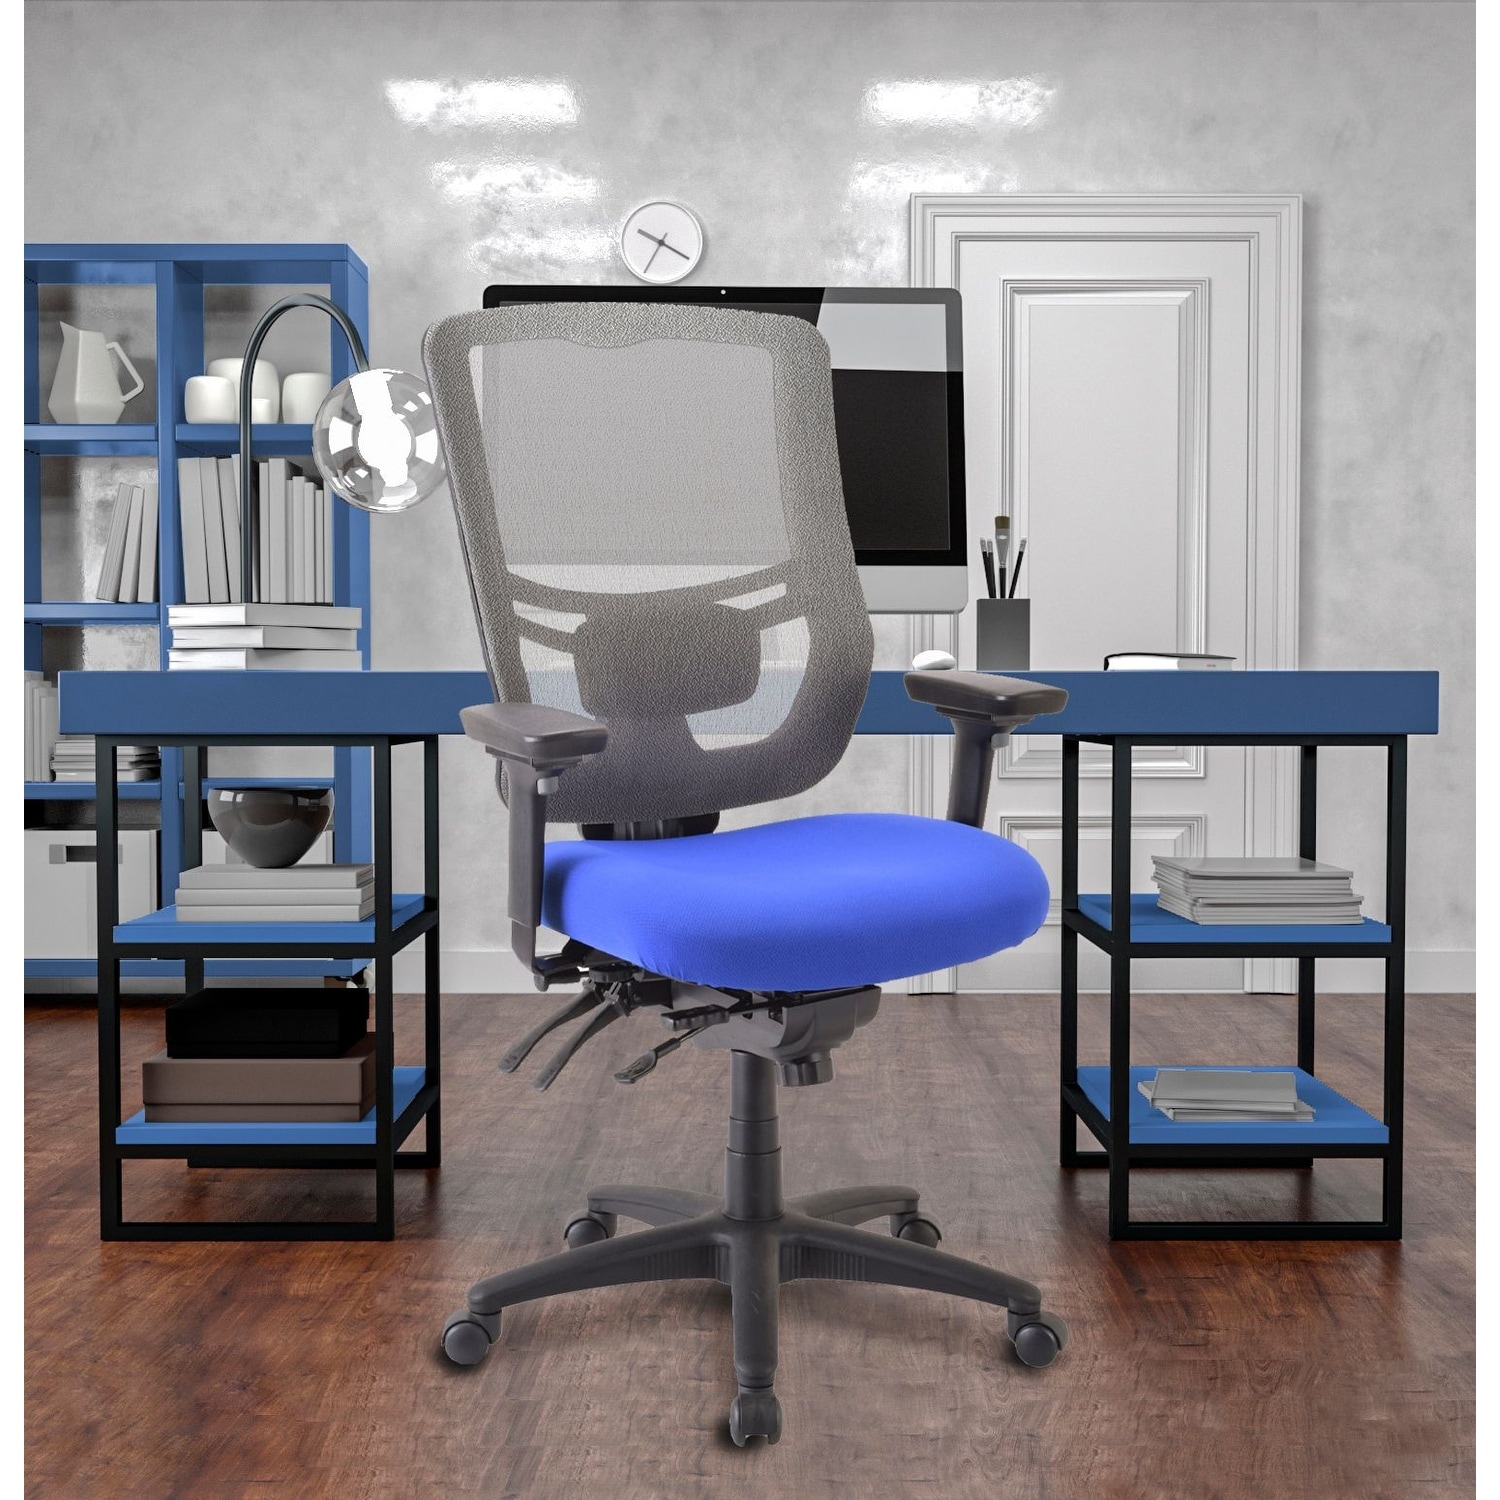 Tempur-Pedic Memory Foam Office Chair for Sale in Atlanta, GA